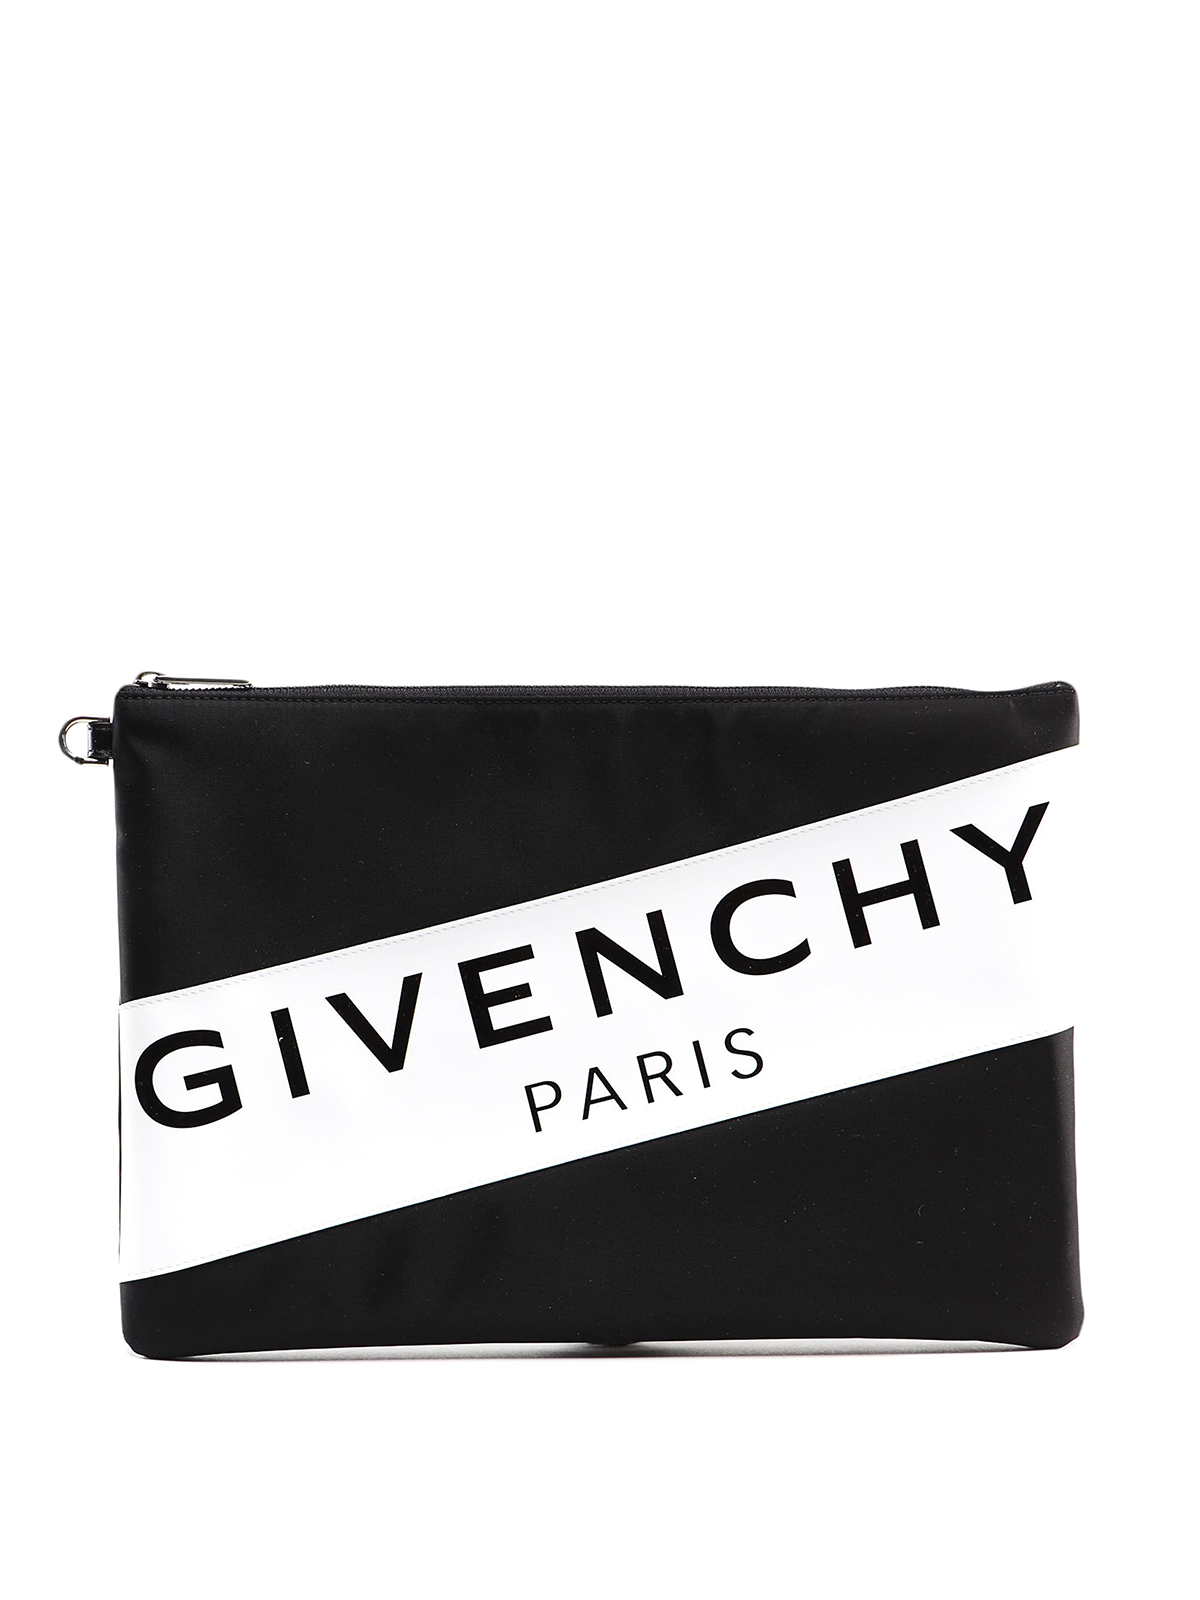 クラッチバッグ Givenchy - クラッチバッグ - 黒 - BK602XK0PF004